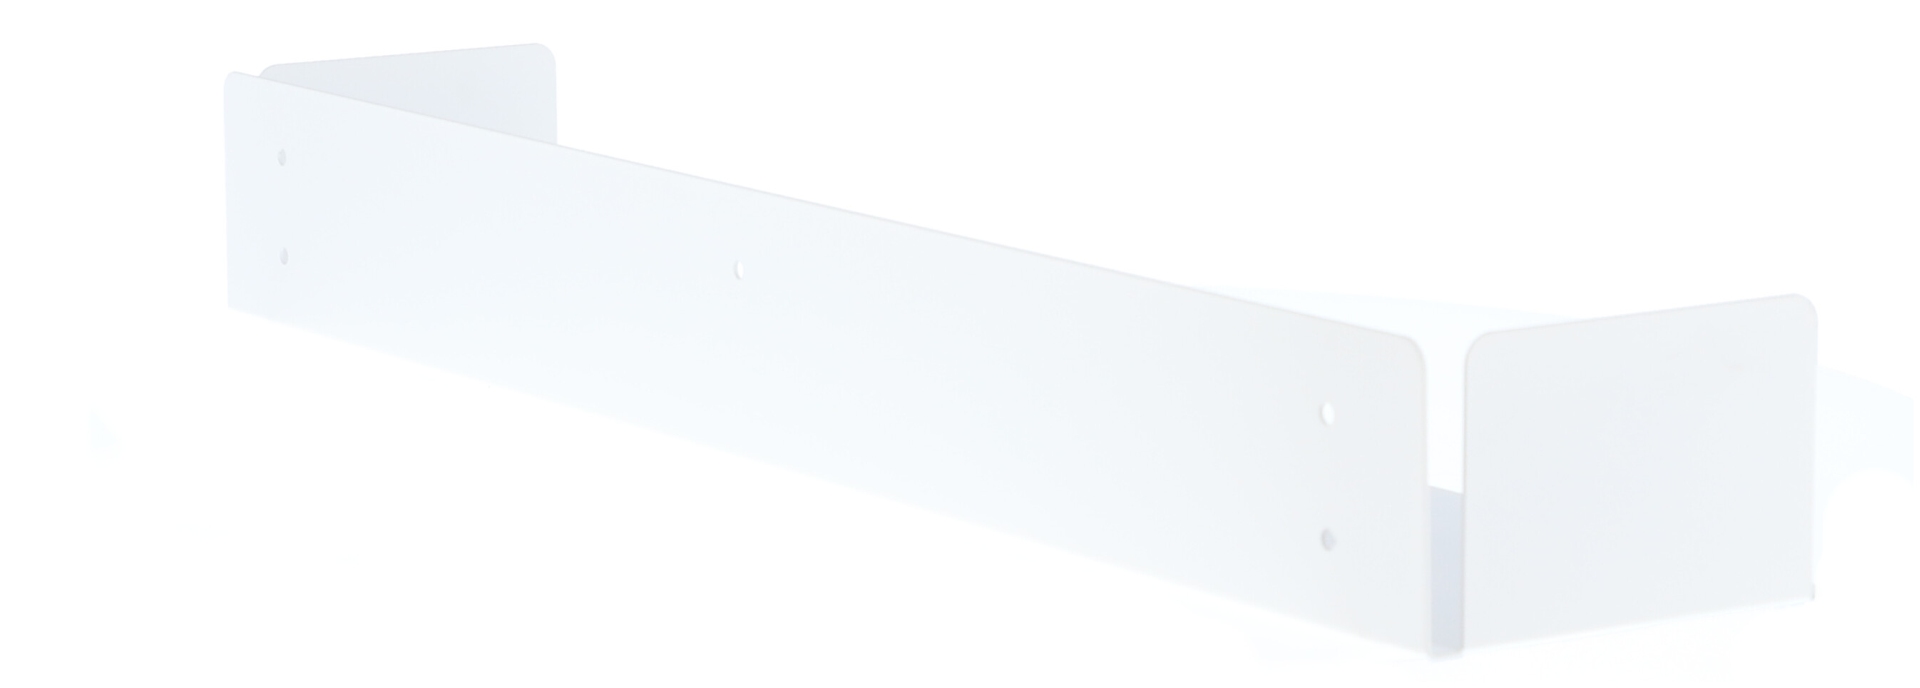 Das Wandregal Lyra wurde aus Metall gefertigt und hat einen weißen Farbton. Die Breite beträgt 80 cm. Das Design ist schlicht aber auch modern. Das Regal ist ein Produkt der Marke Jan Kurtz.